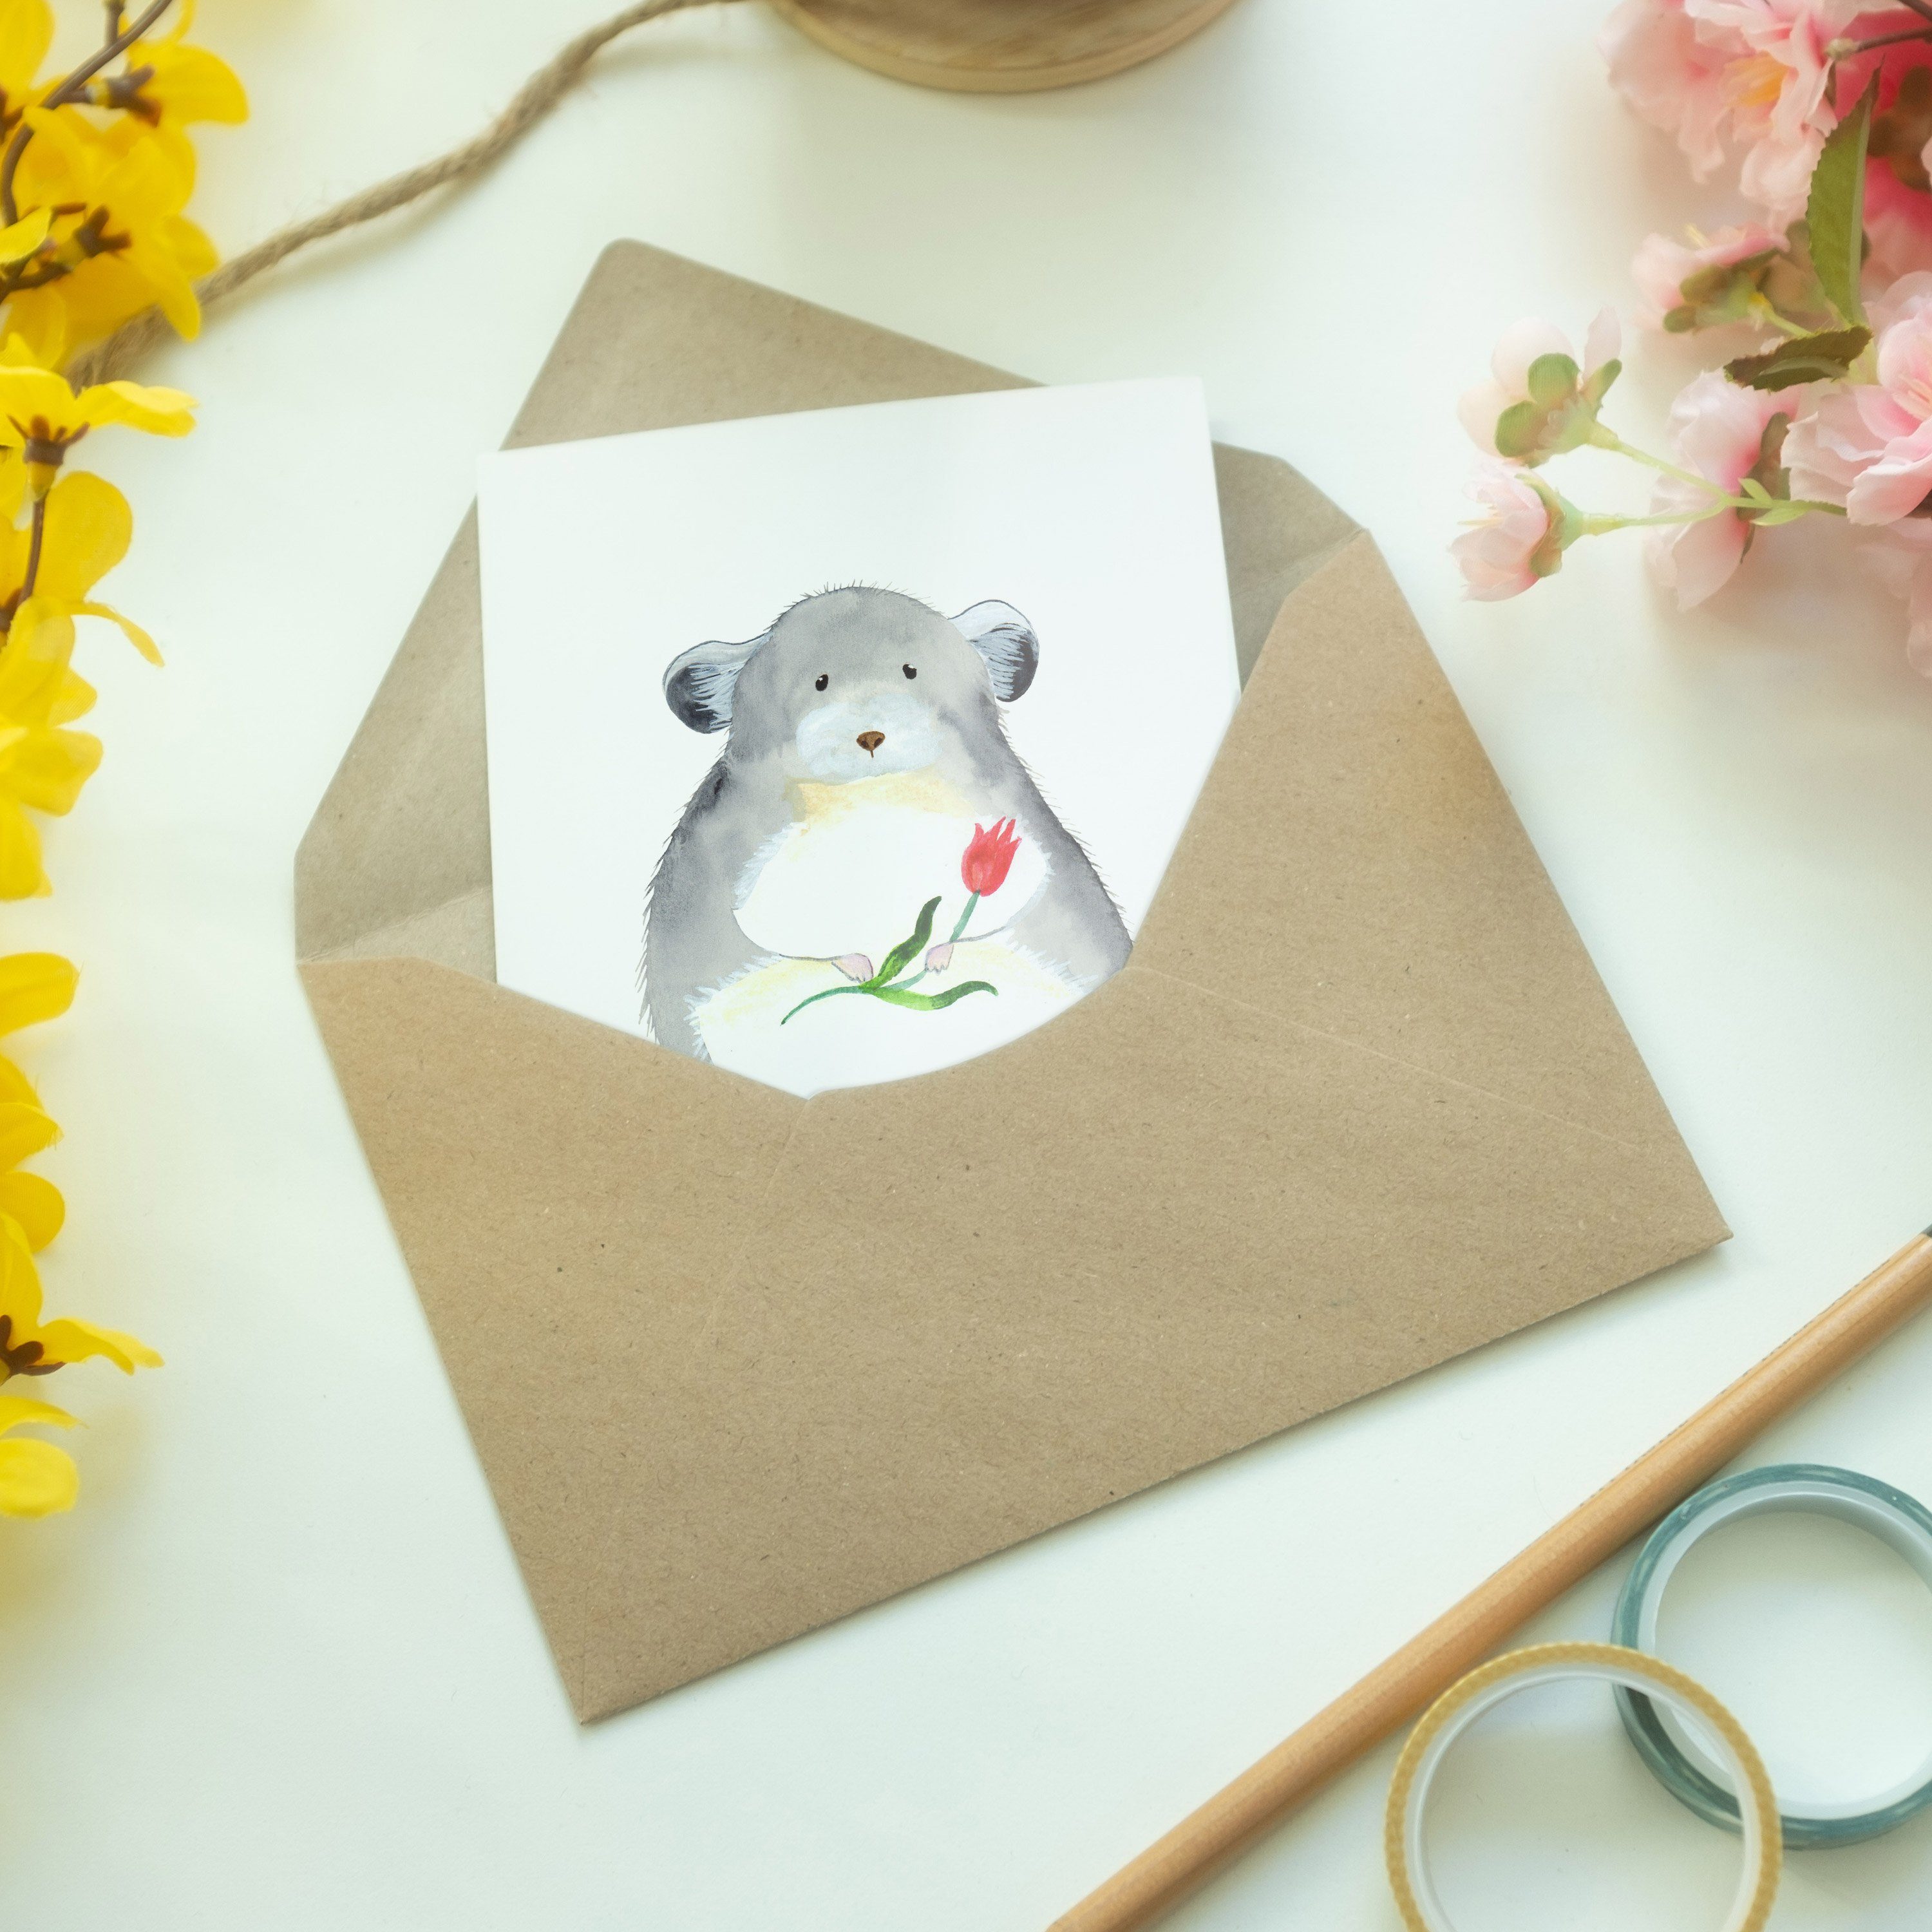 Mr. & Mrs. Panda Blume Geschenk, Chinchilla - mit - Sprüche, Weiß Einladungska lustige Grußkarte